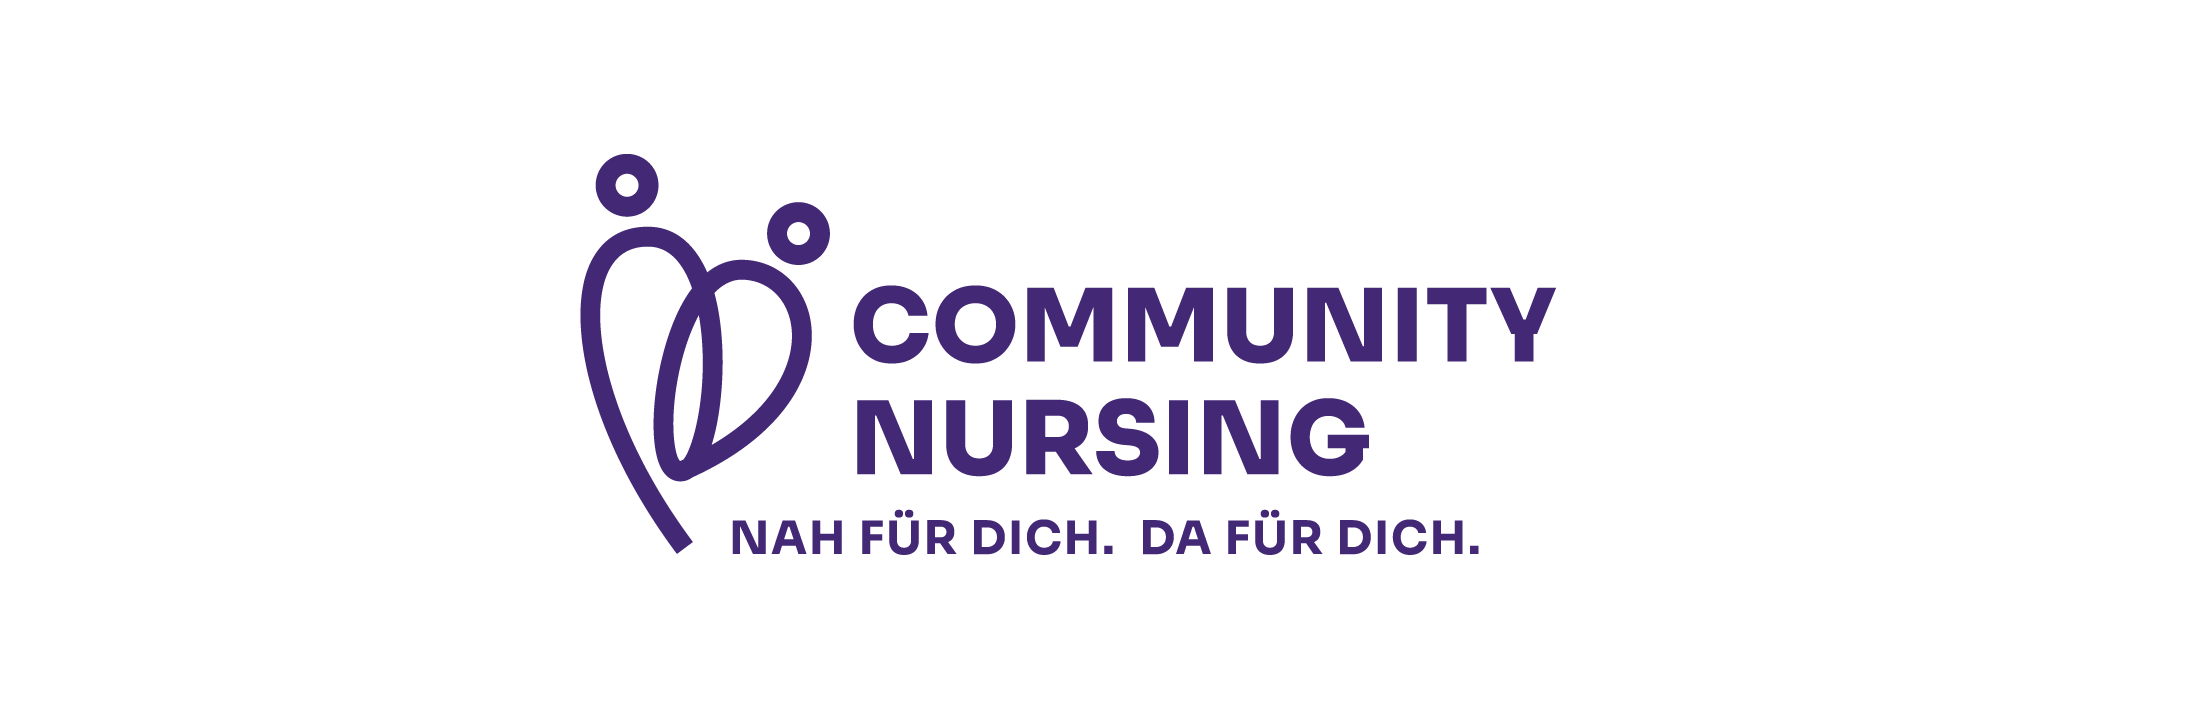 Logo und Claim des Projekts Community Nursing - Nah für dich. Da für dich.